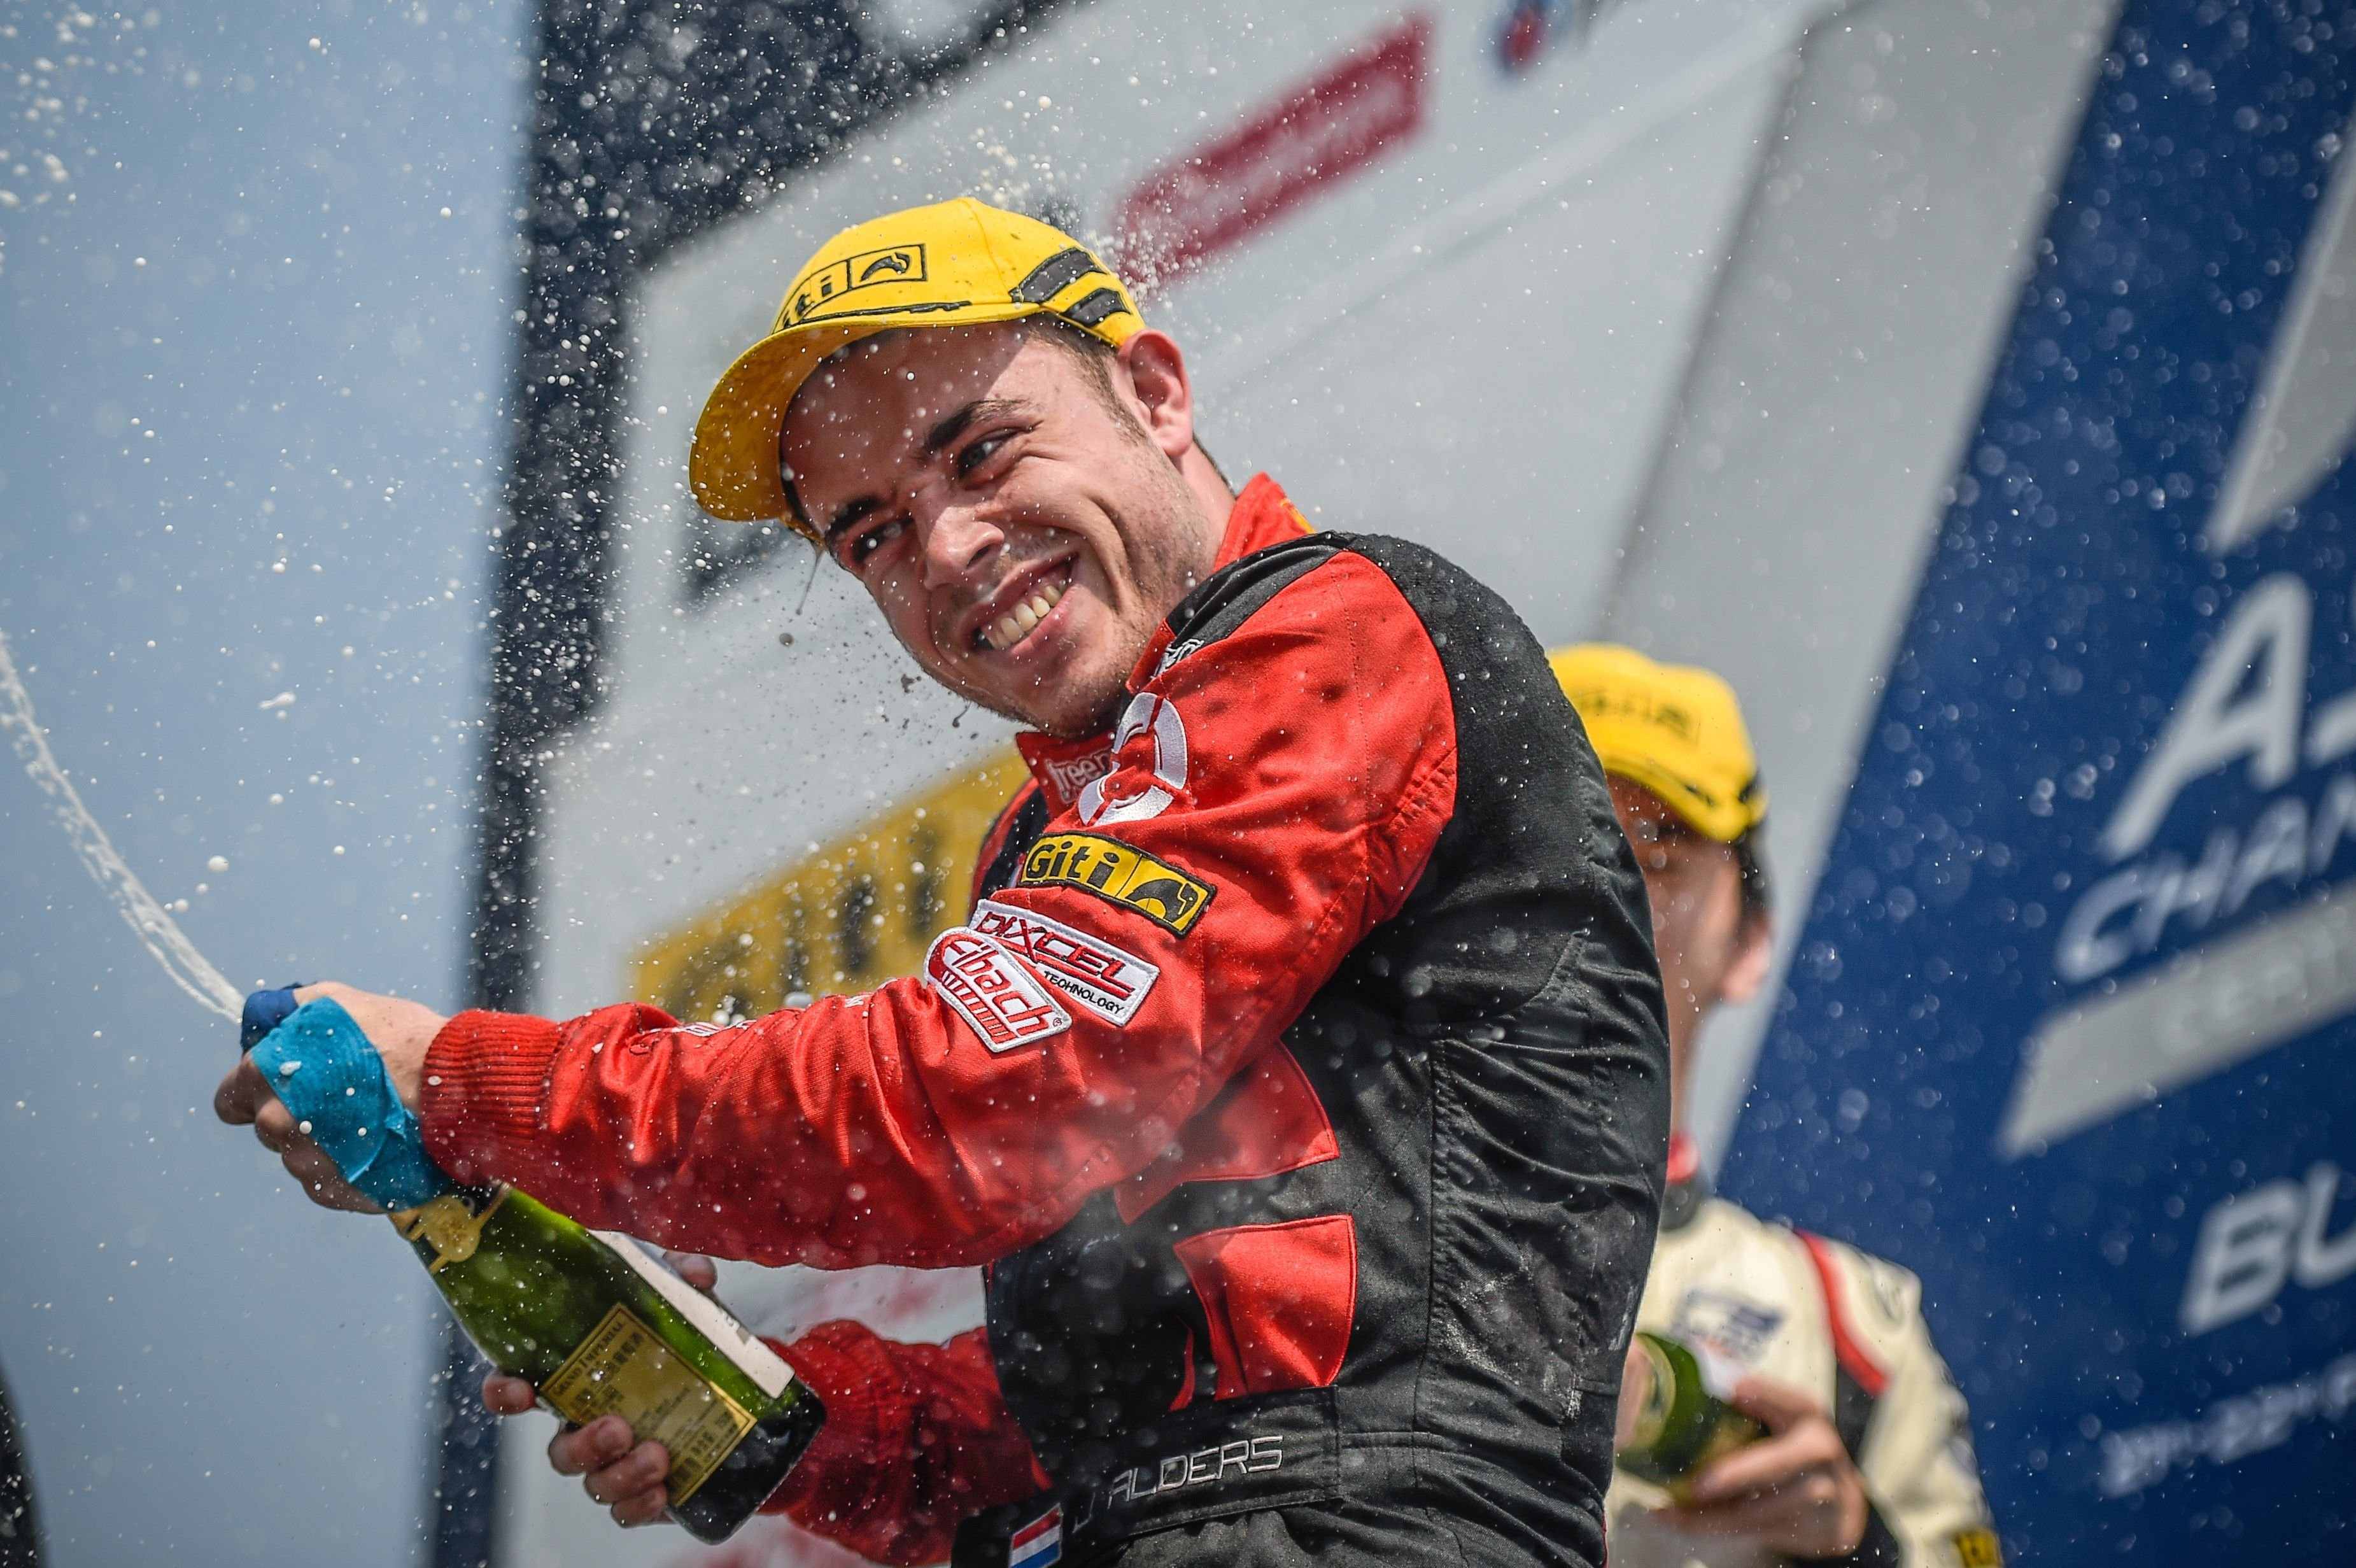 Joey Alders crowned 2020 F3 Asian Champion in dramatic season finale